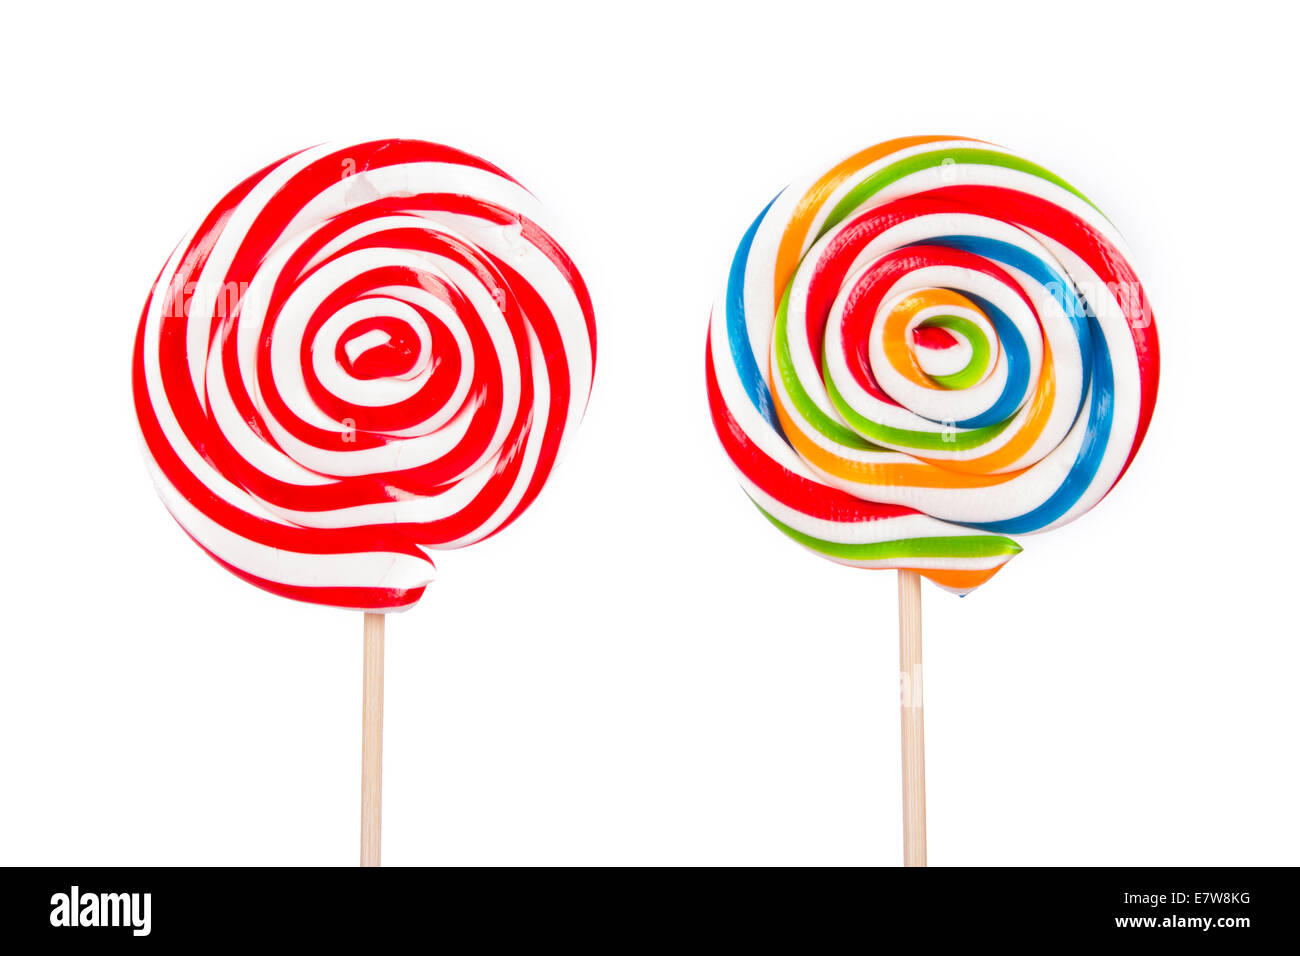 Sucette spirale colorée candy sur stick, isolé sur fond blanc Photo Stock -  Alamy